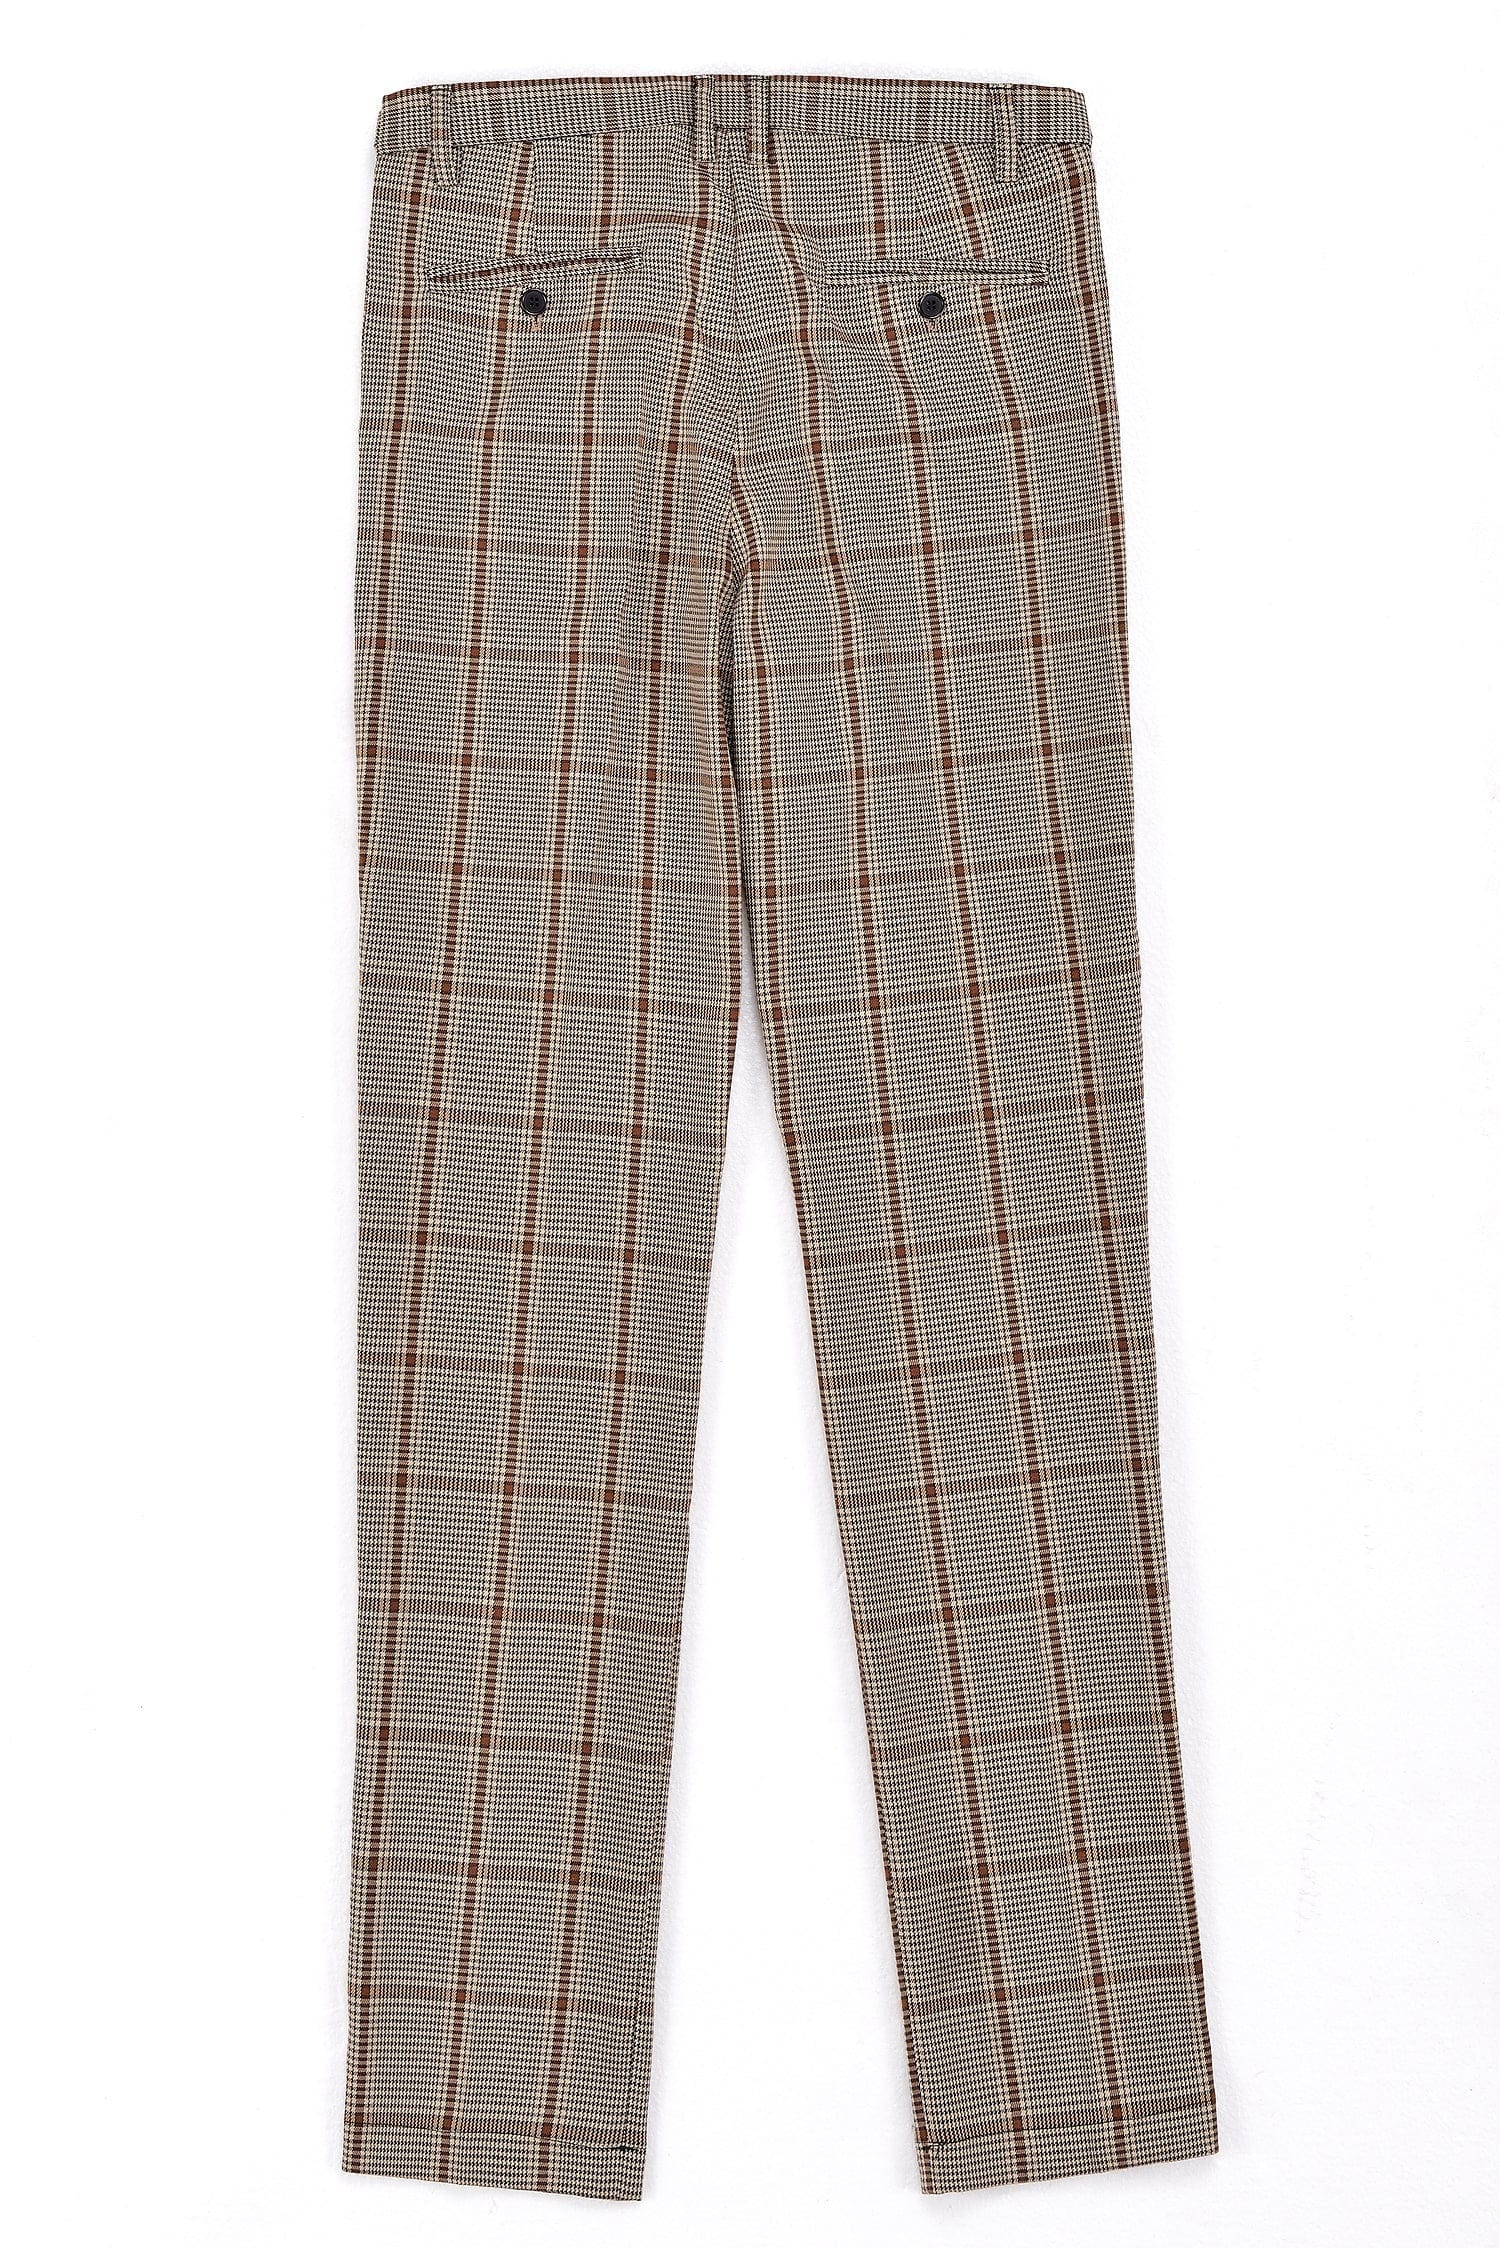 ceehuteey Formal Men's Suits Slim Fit 3 Pieces Notch Lapel Tuxedos (Blazer+Vest+ Pant)